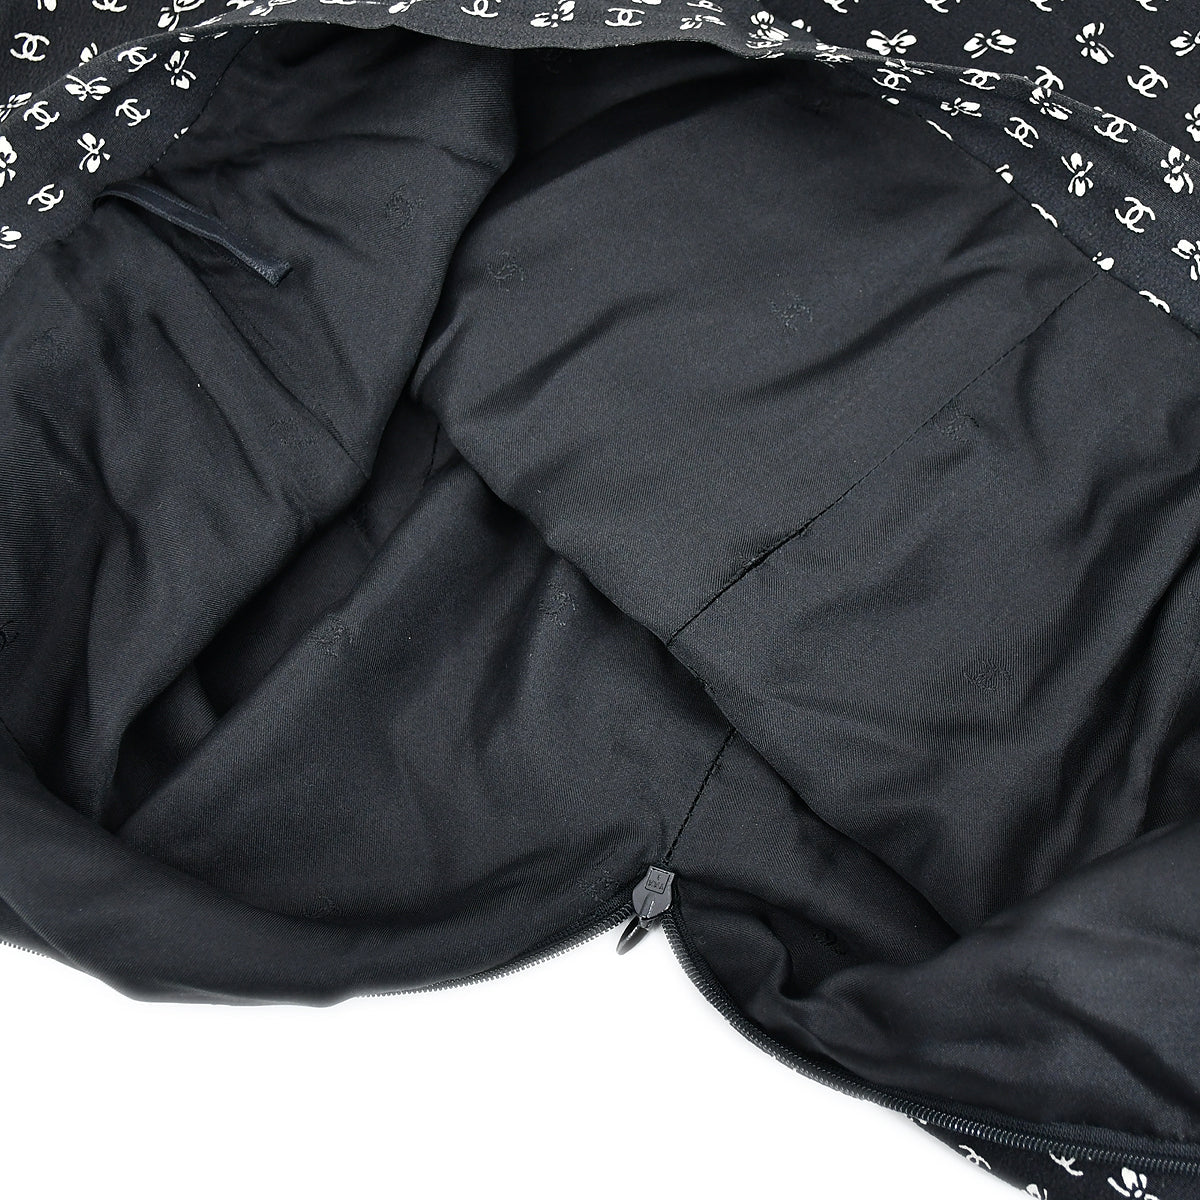 Chanel Skirt Black 97C 